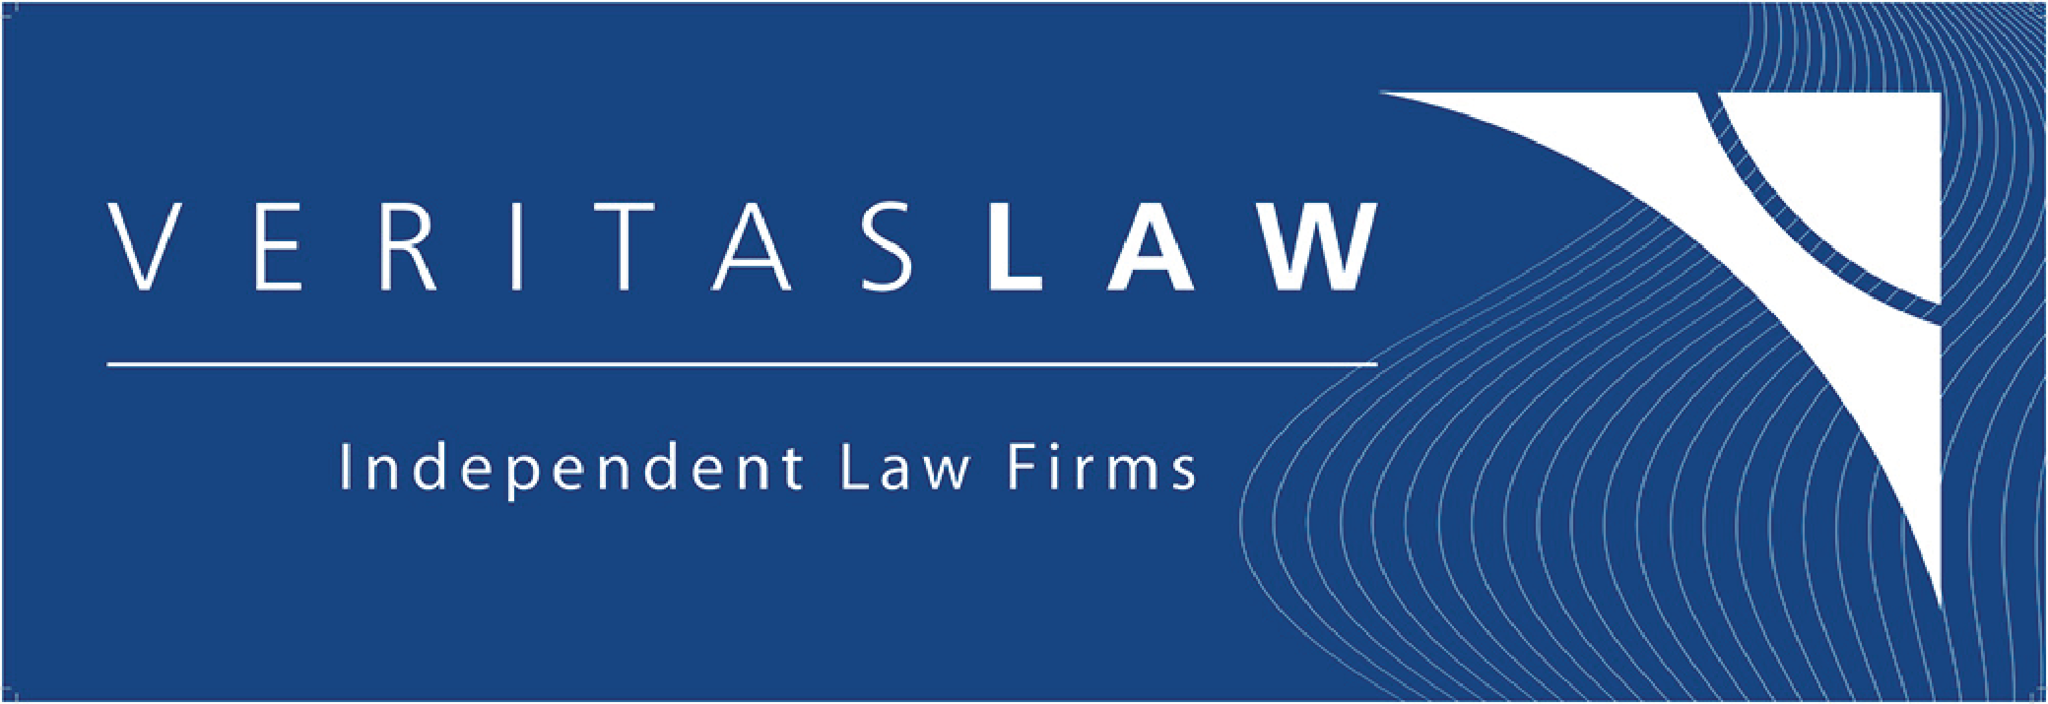 Veritas Law logo